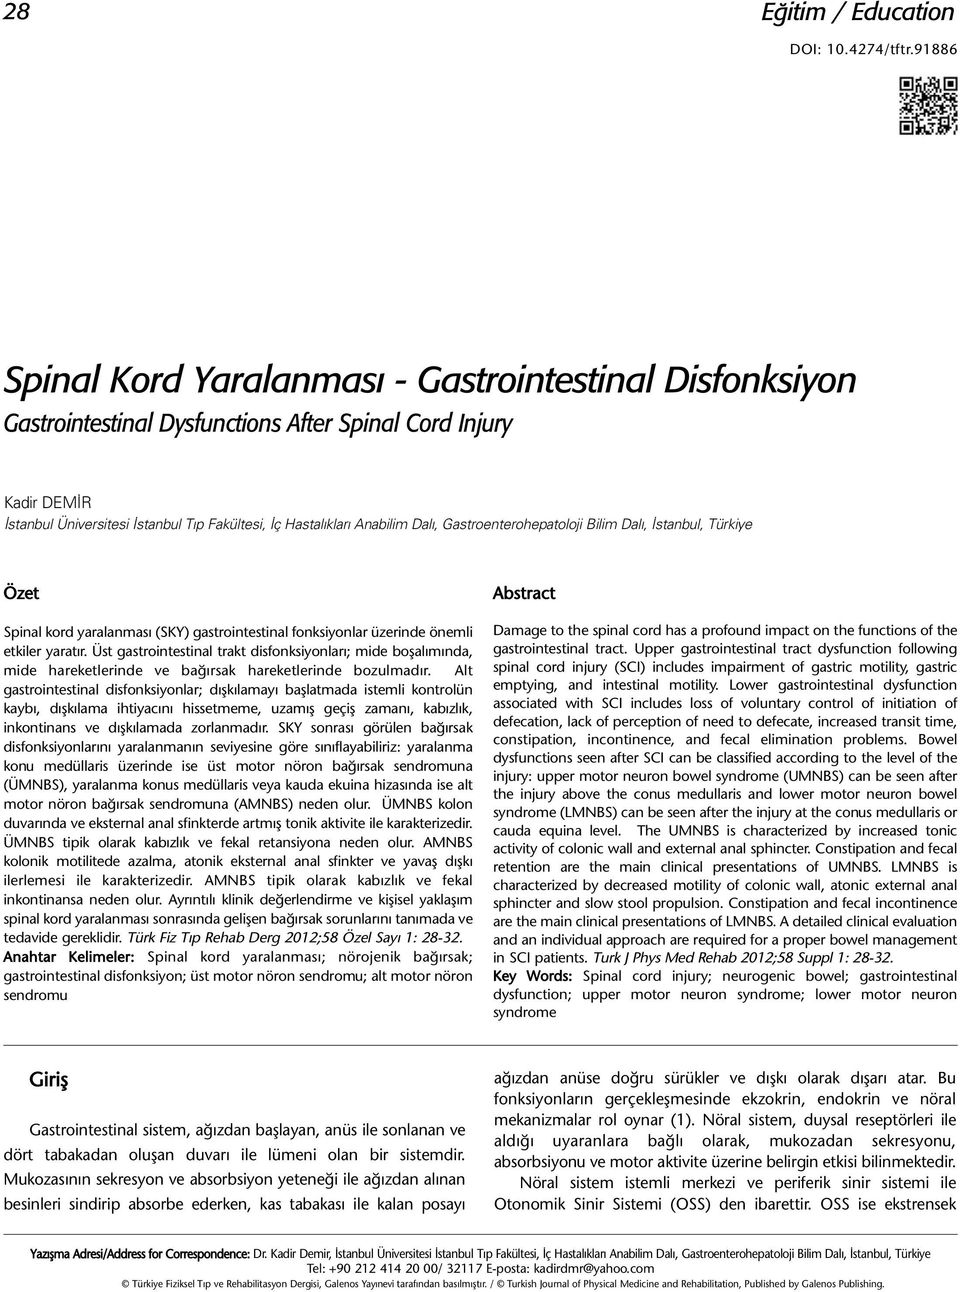 Türkiye Özet Spinal kord yaralanması (SKY) gastrointestinal fonksiyonlar üzerinde önemli etkiler yaratır.